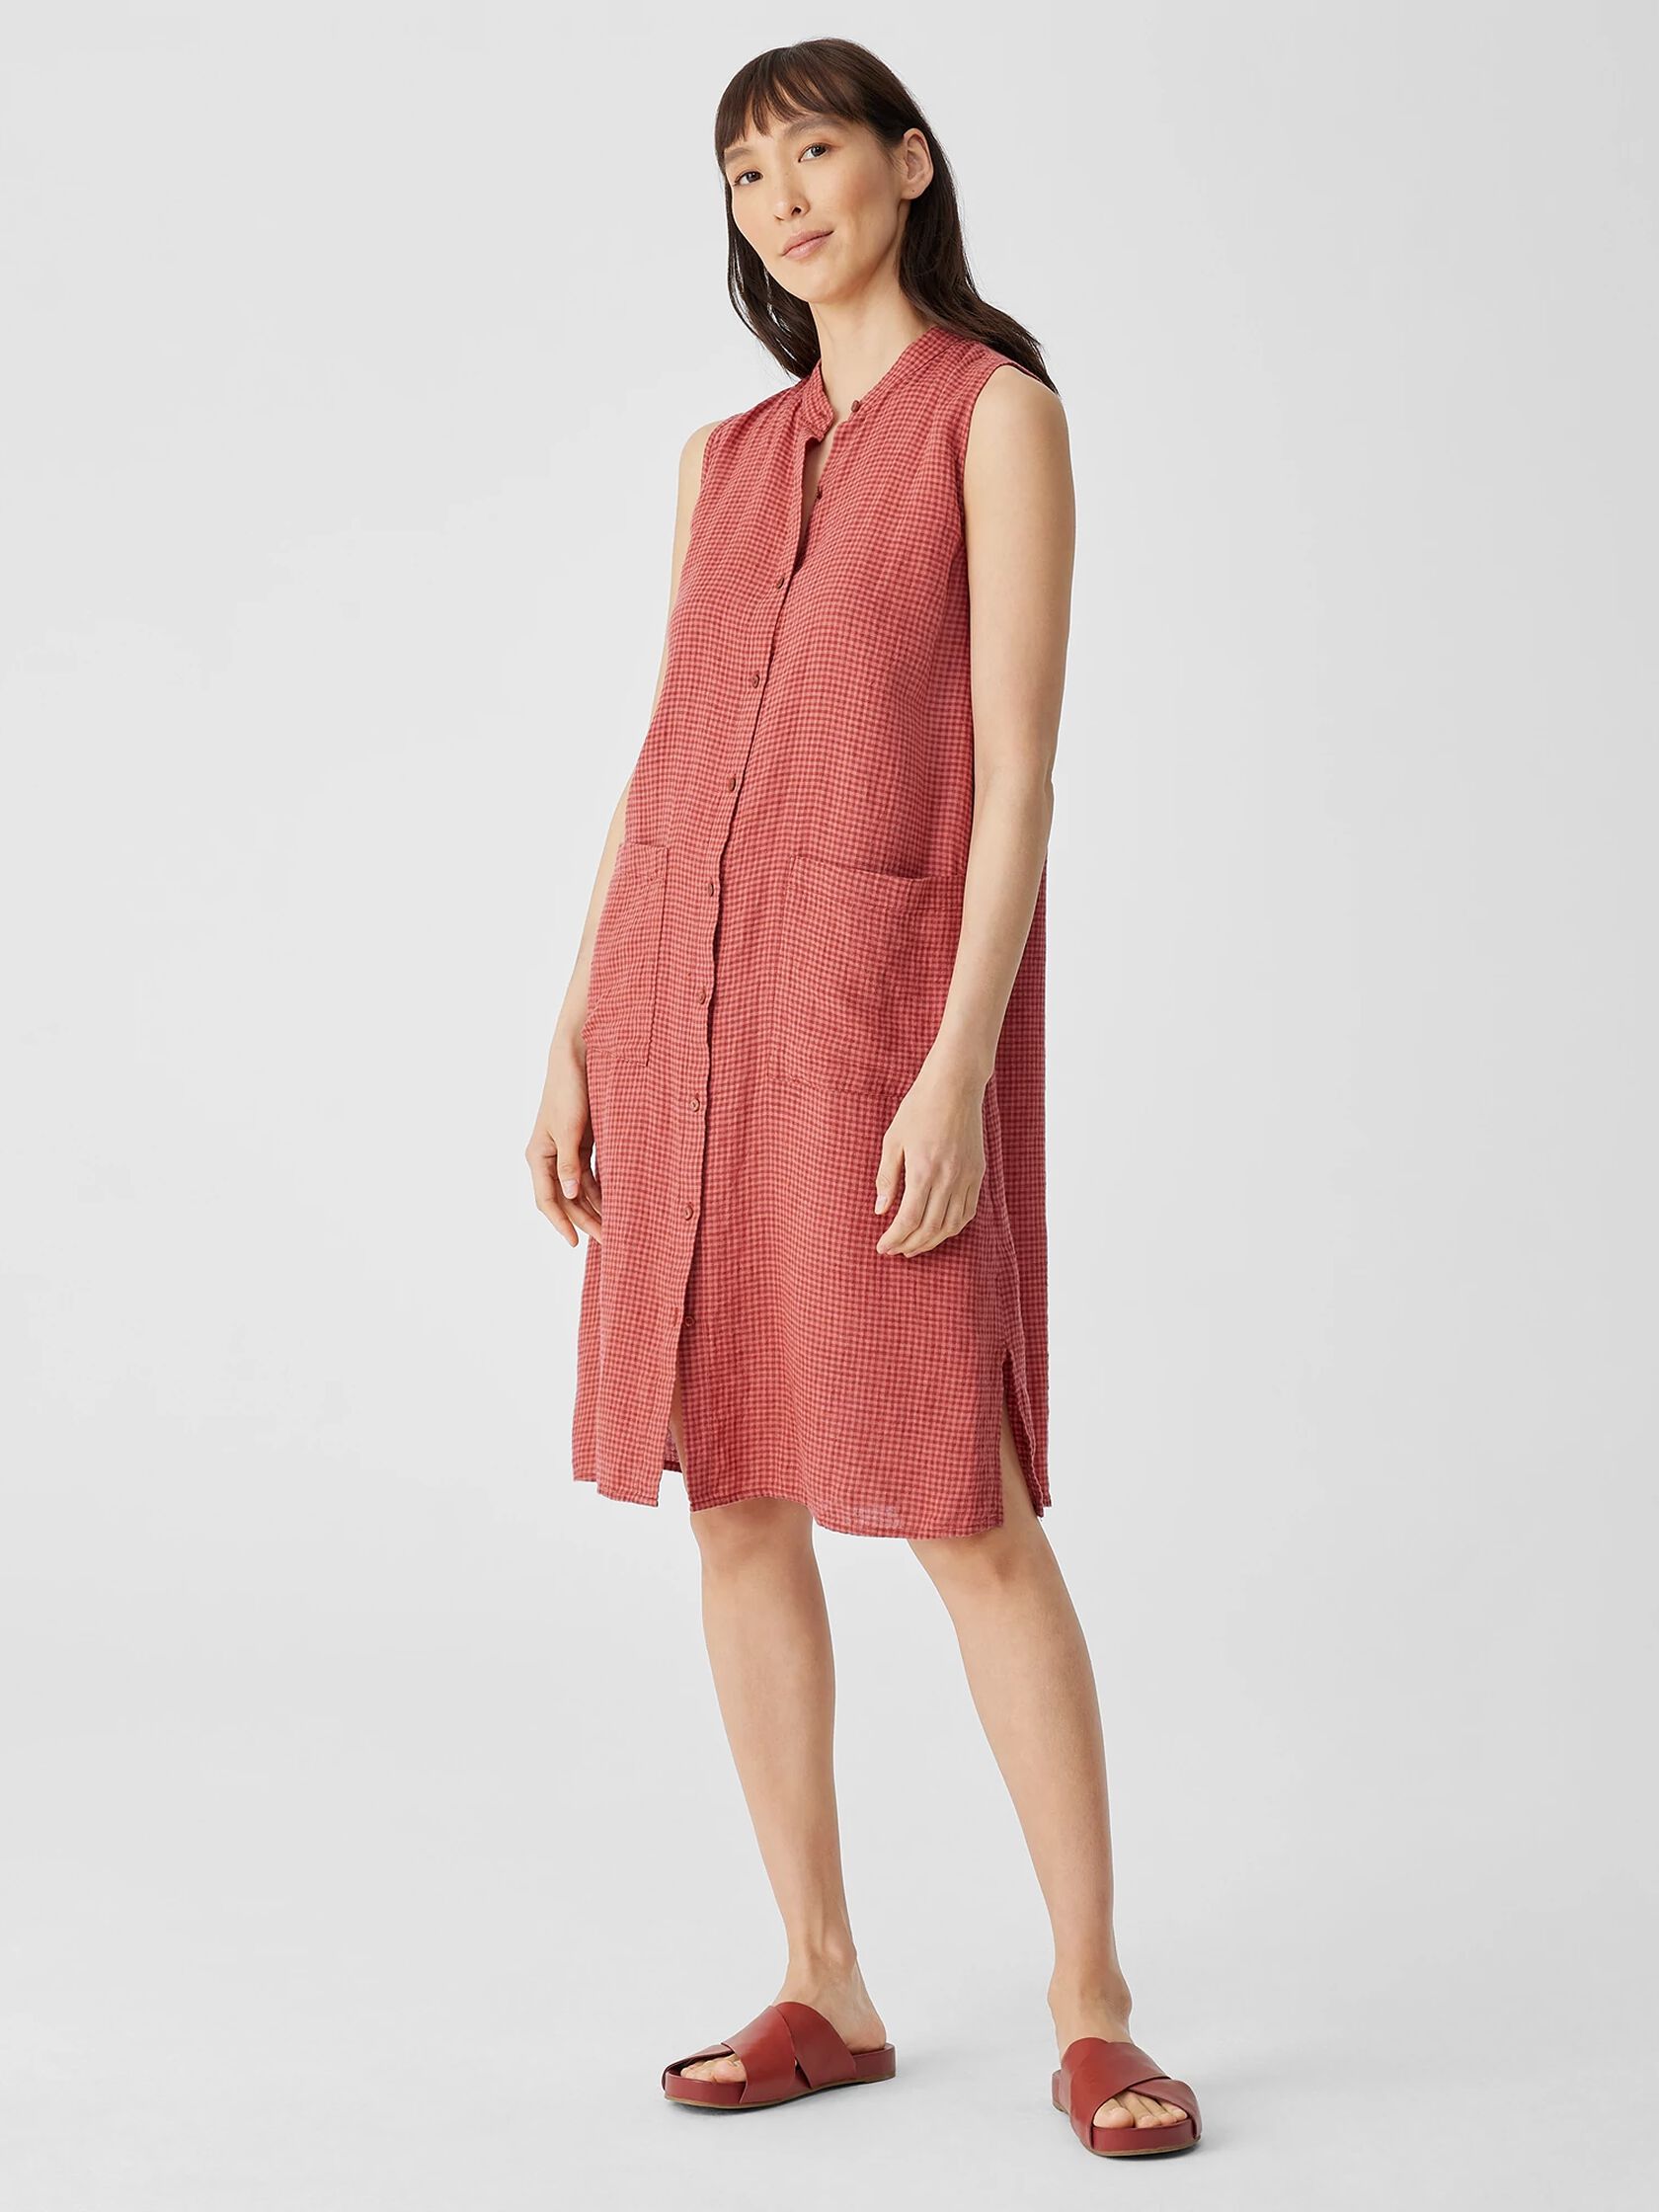 Puckered Organic Linen Sleeveless Dress